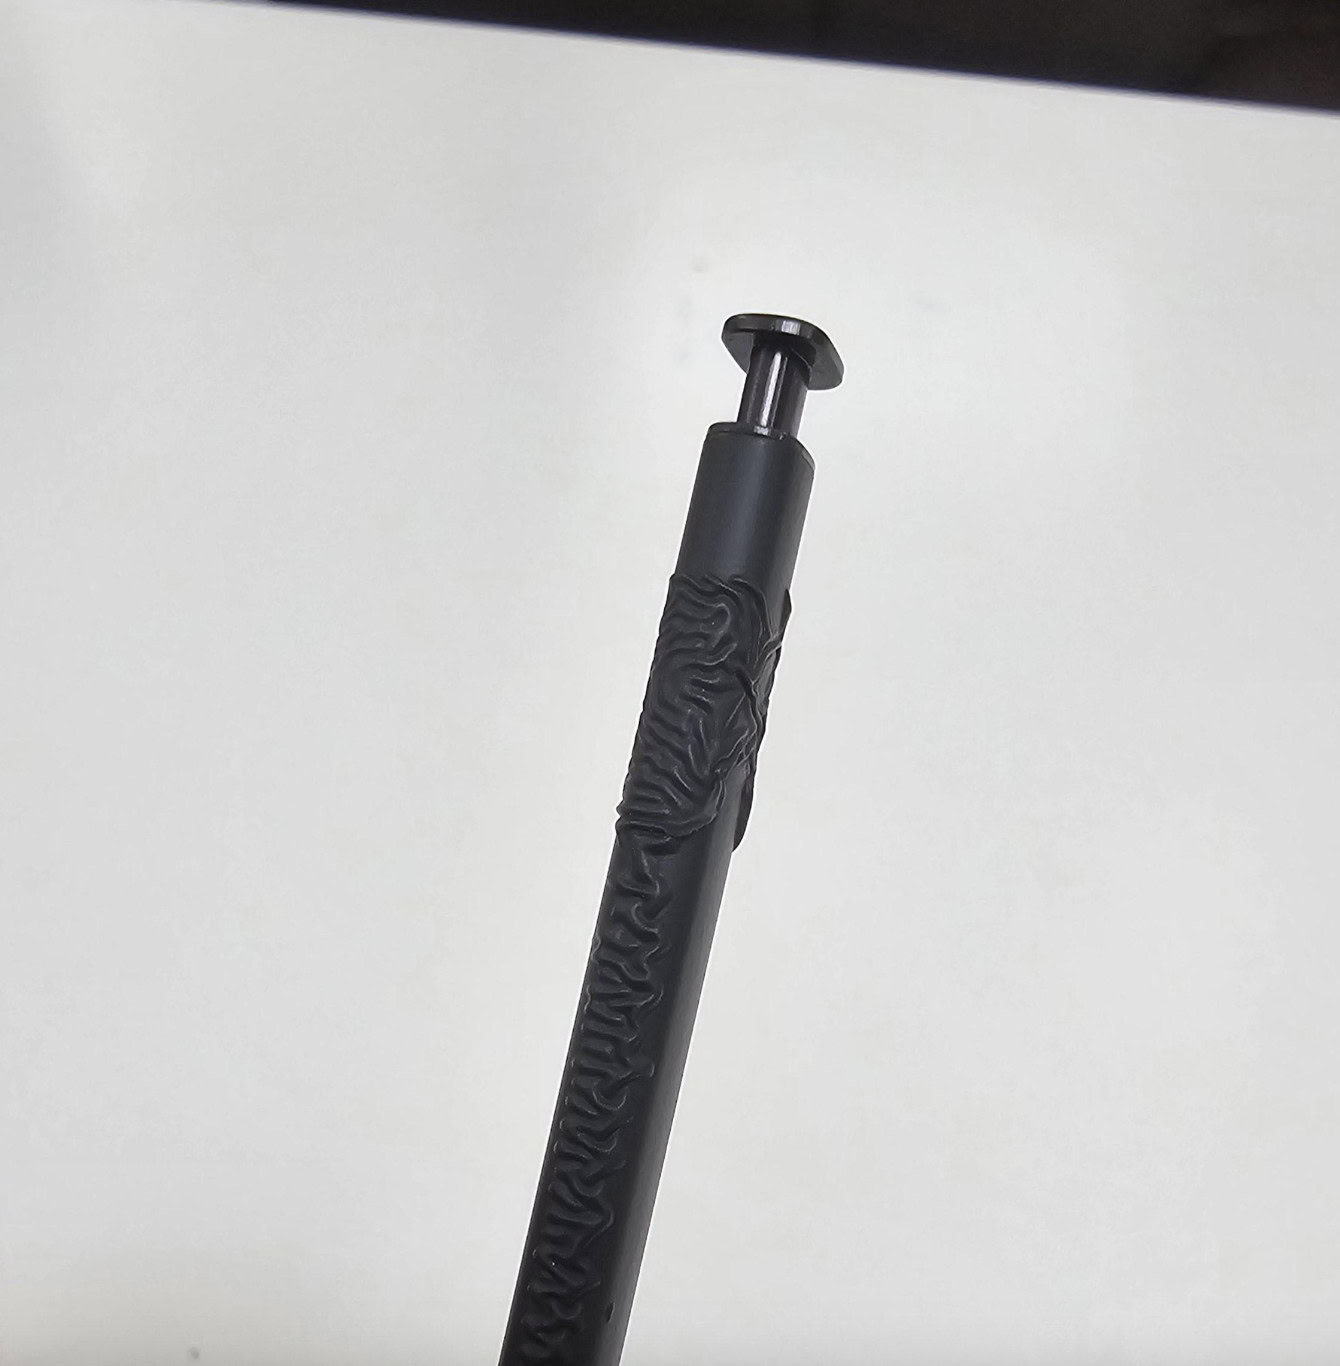 Le S Pen a une texture ondulée en raison du contact avec la colle UV